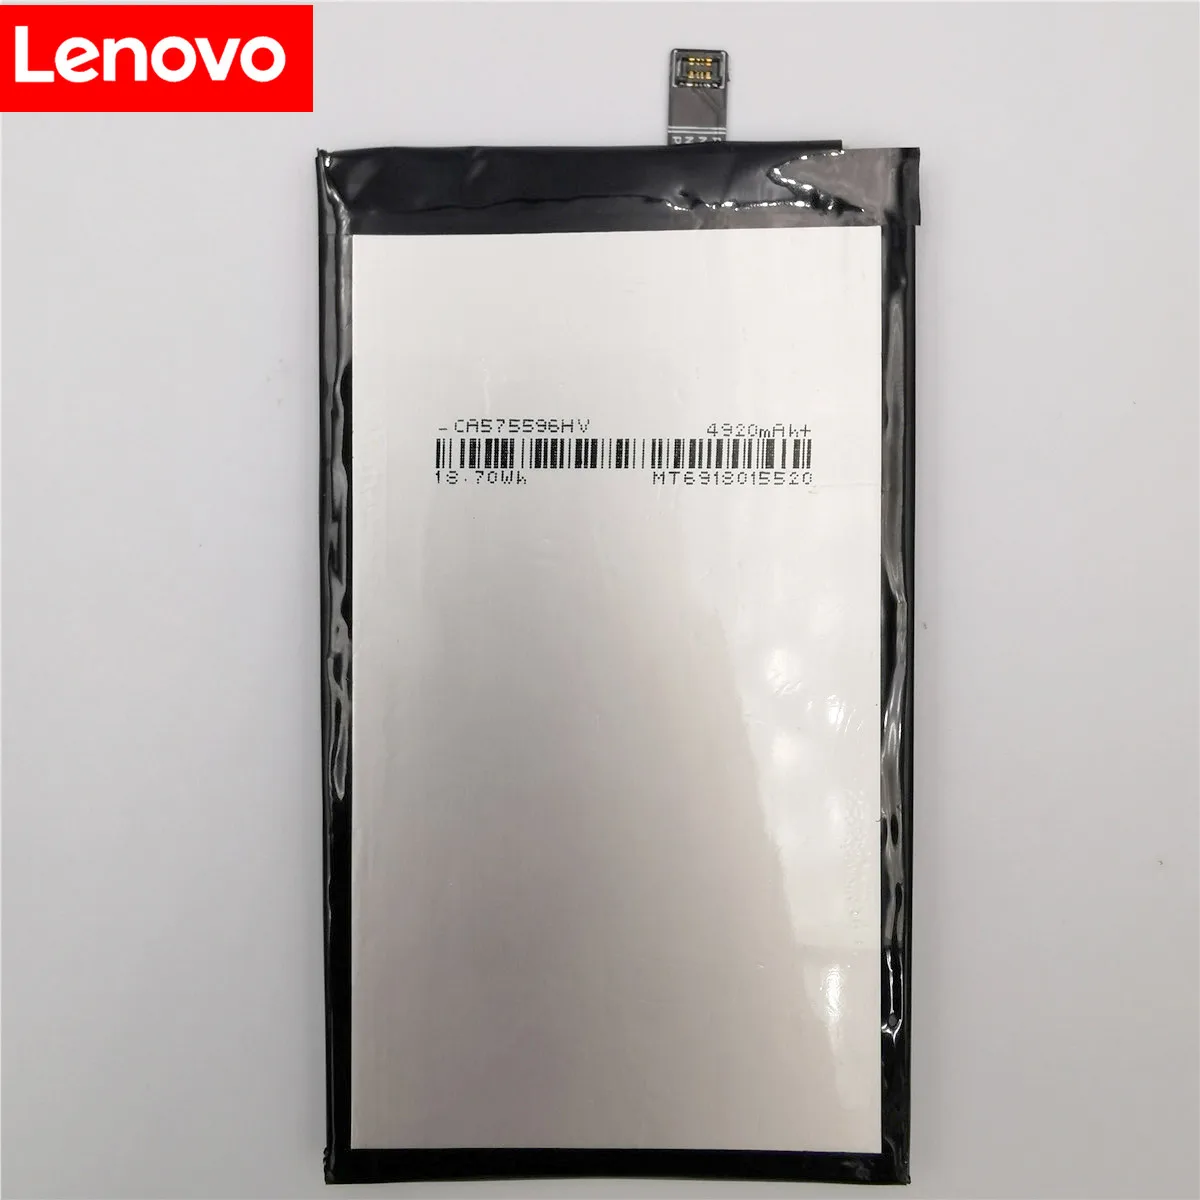 100% מקורי חדש באיכות גבוהה אמיתי 5000mAh BL244 סוללה Batterie על Lenovo Vibe P1 P1A42 P1C58 P1C72 - 2